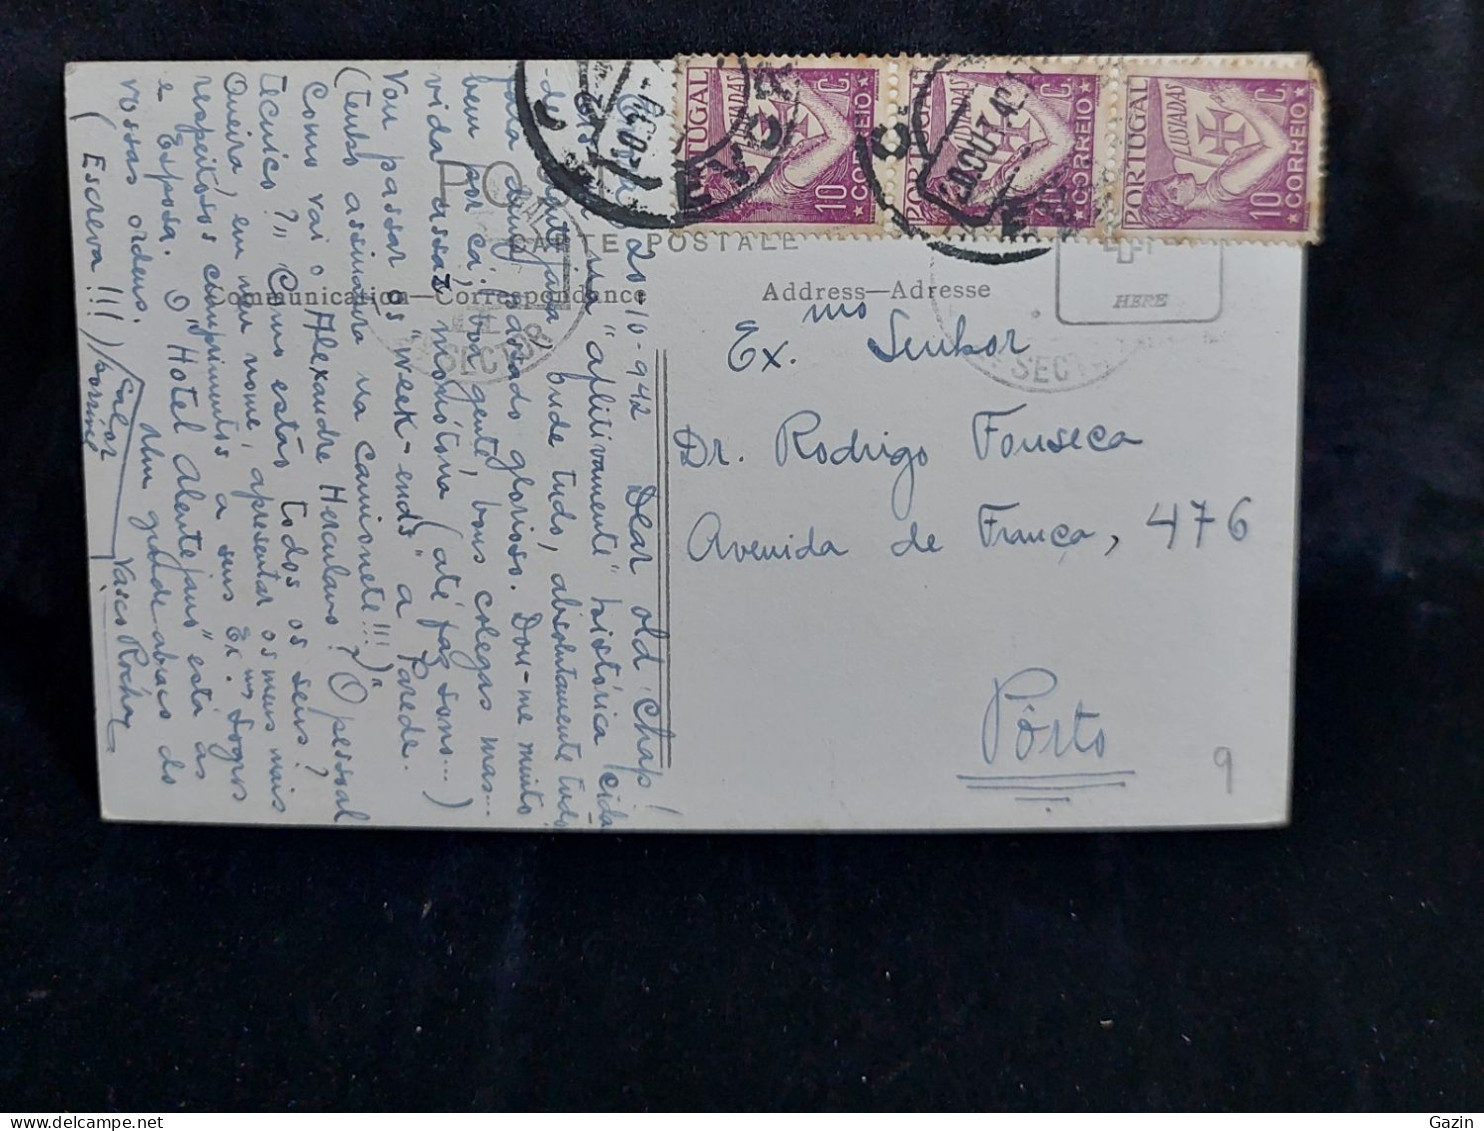 C6/6 - Egreja Dos Lóios * Postal Fotografico * Évora * Portugal * Circulado * Destino - Porto - Evora